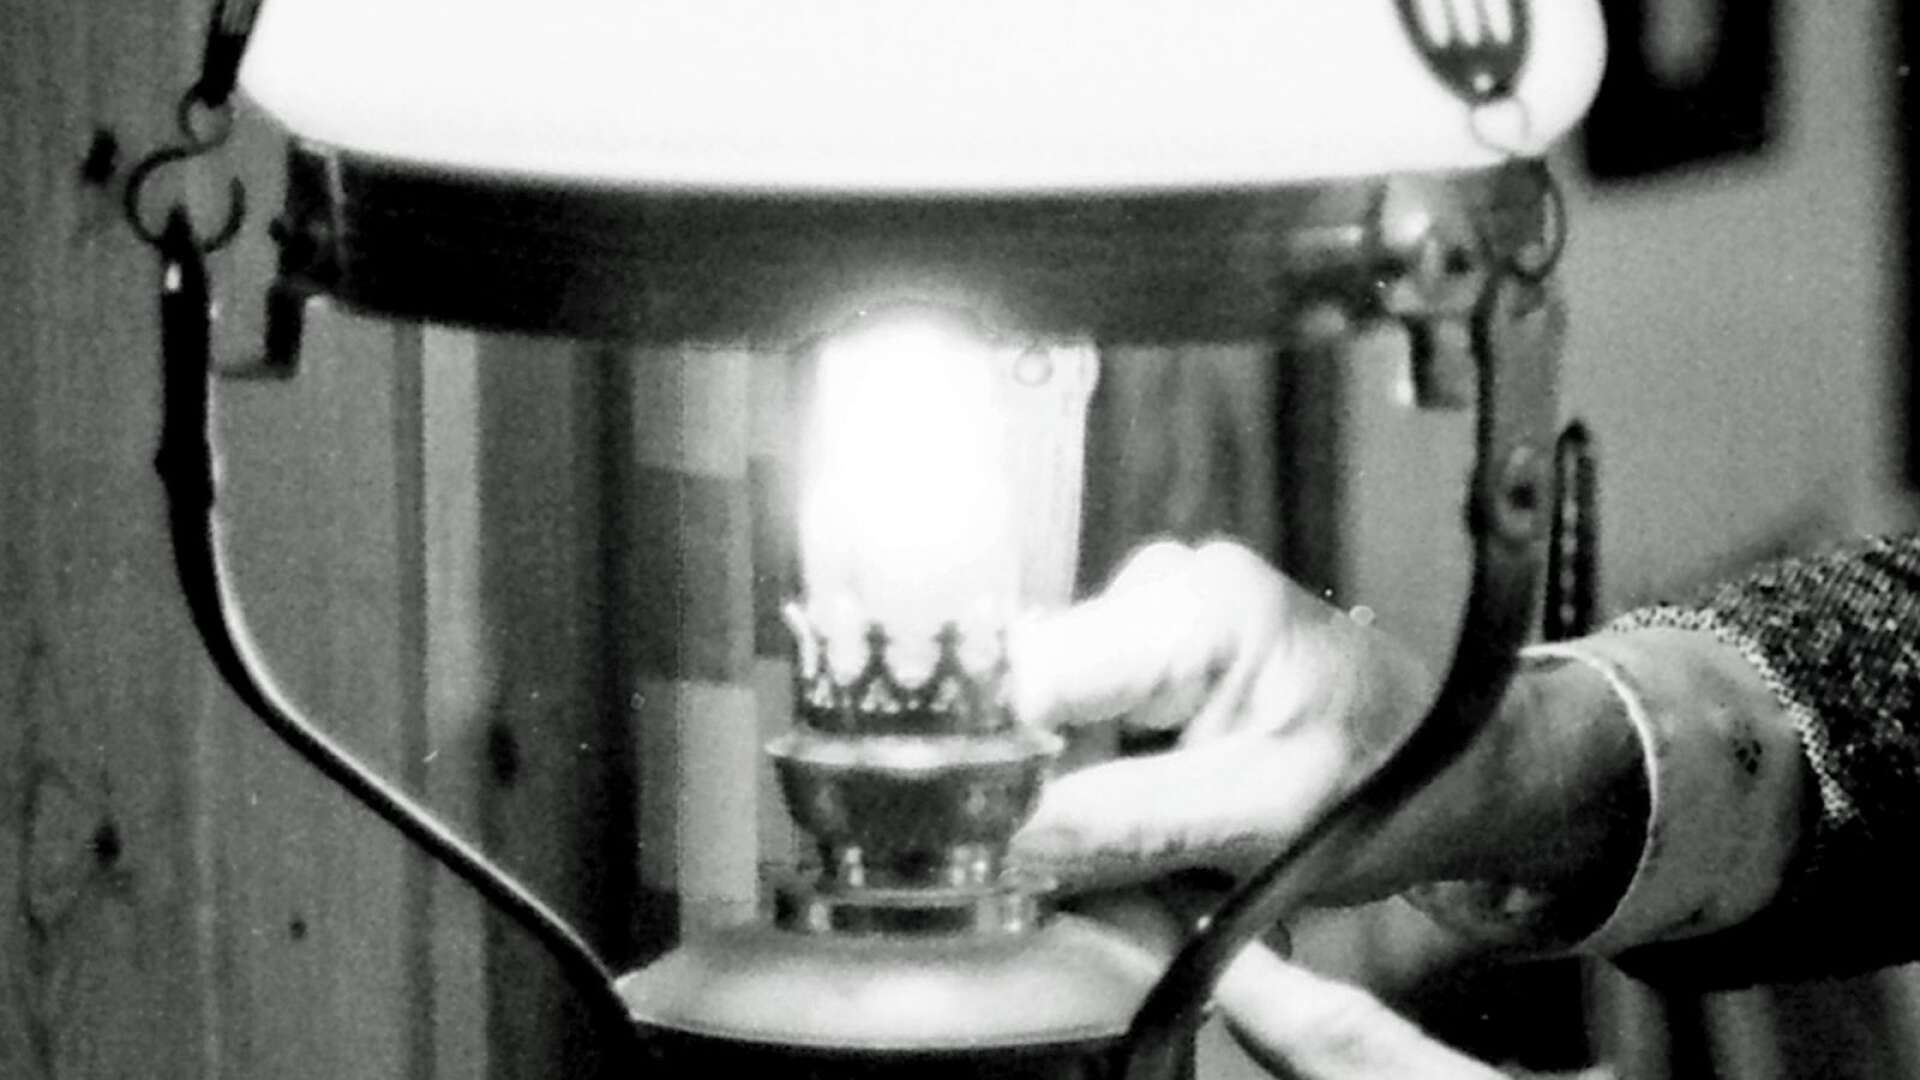 Innan det drogs in elektricitet i husen var det bland annat fotogenlampor som spred ljus i hemmen. Under första världskriget var dock fotogen en bristvara. Det gjorde drömmen om elektrisk ström ännu starkare. (Fotografiet är beskuret.)